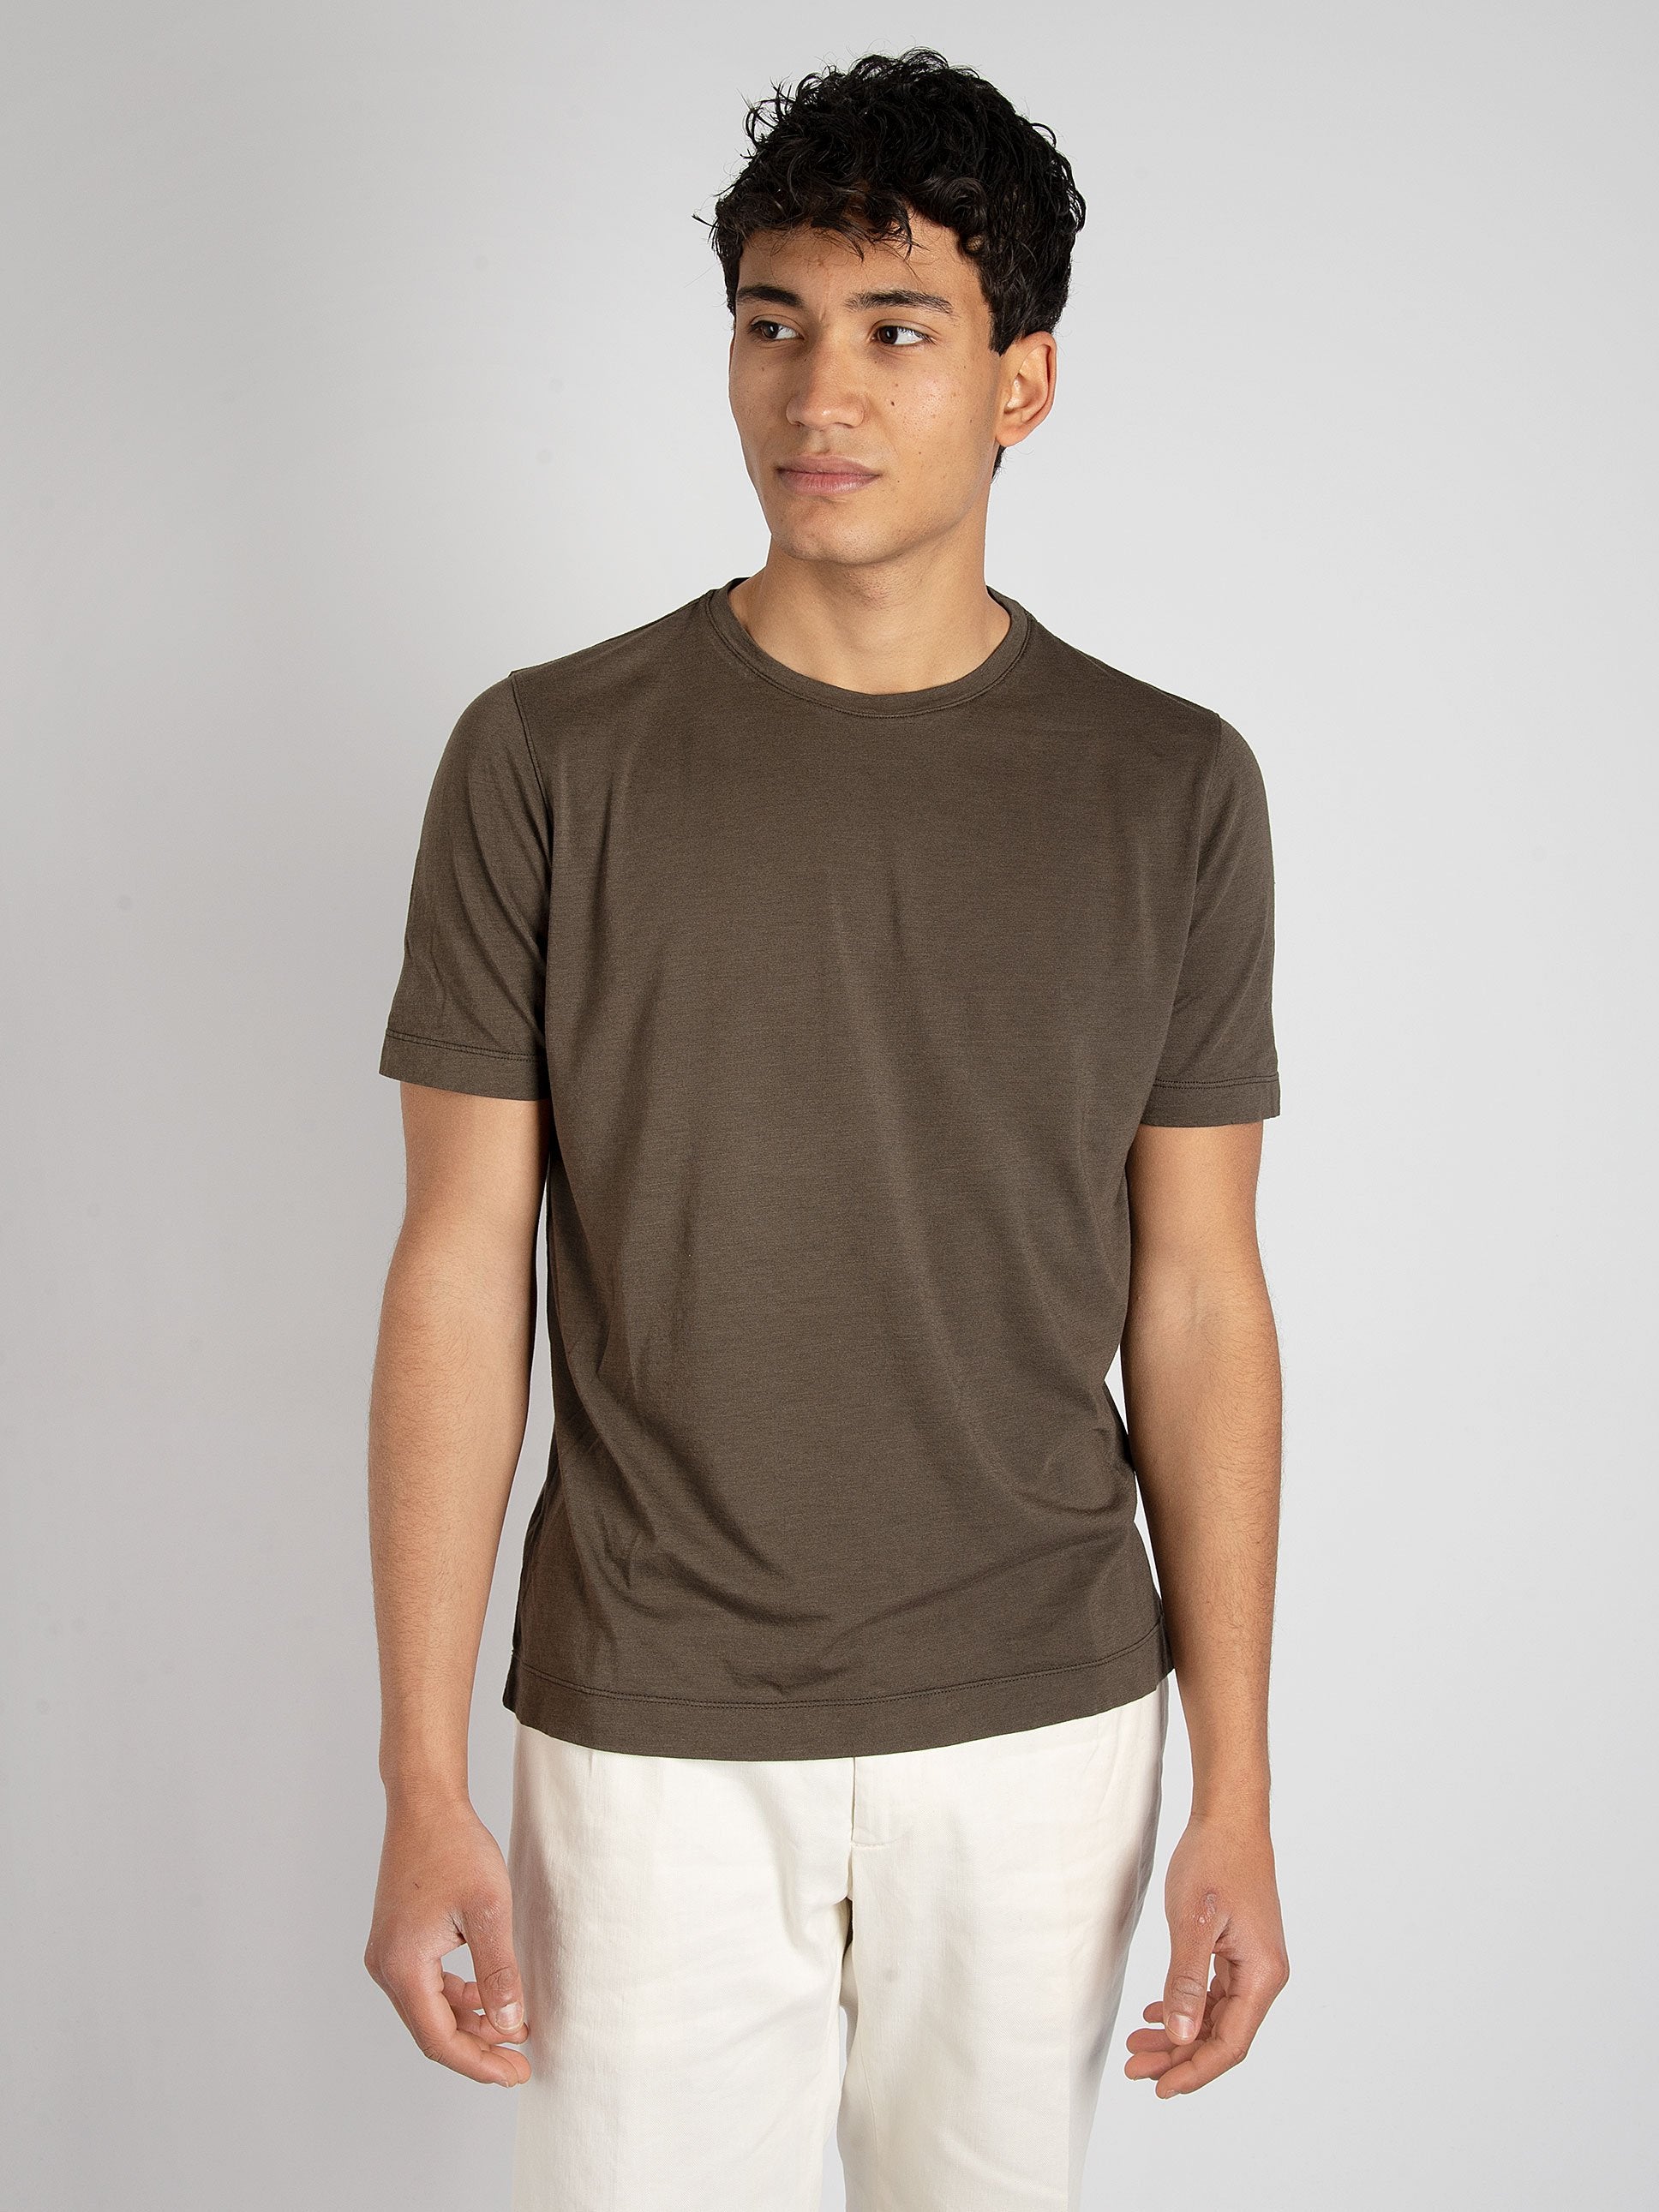 T-shirt Cotone Modal - Testa di moro